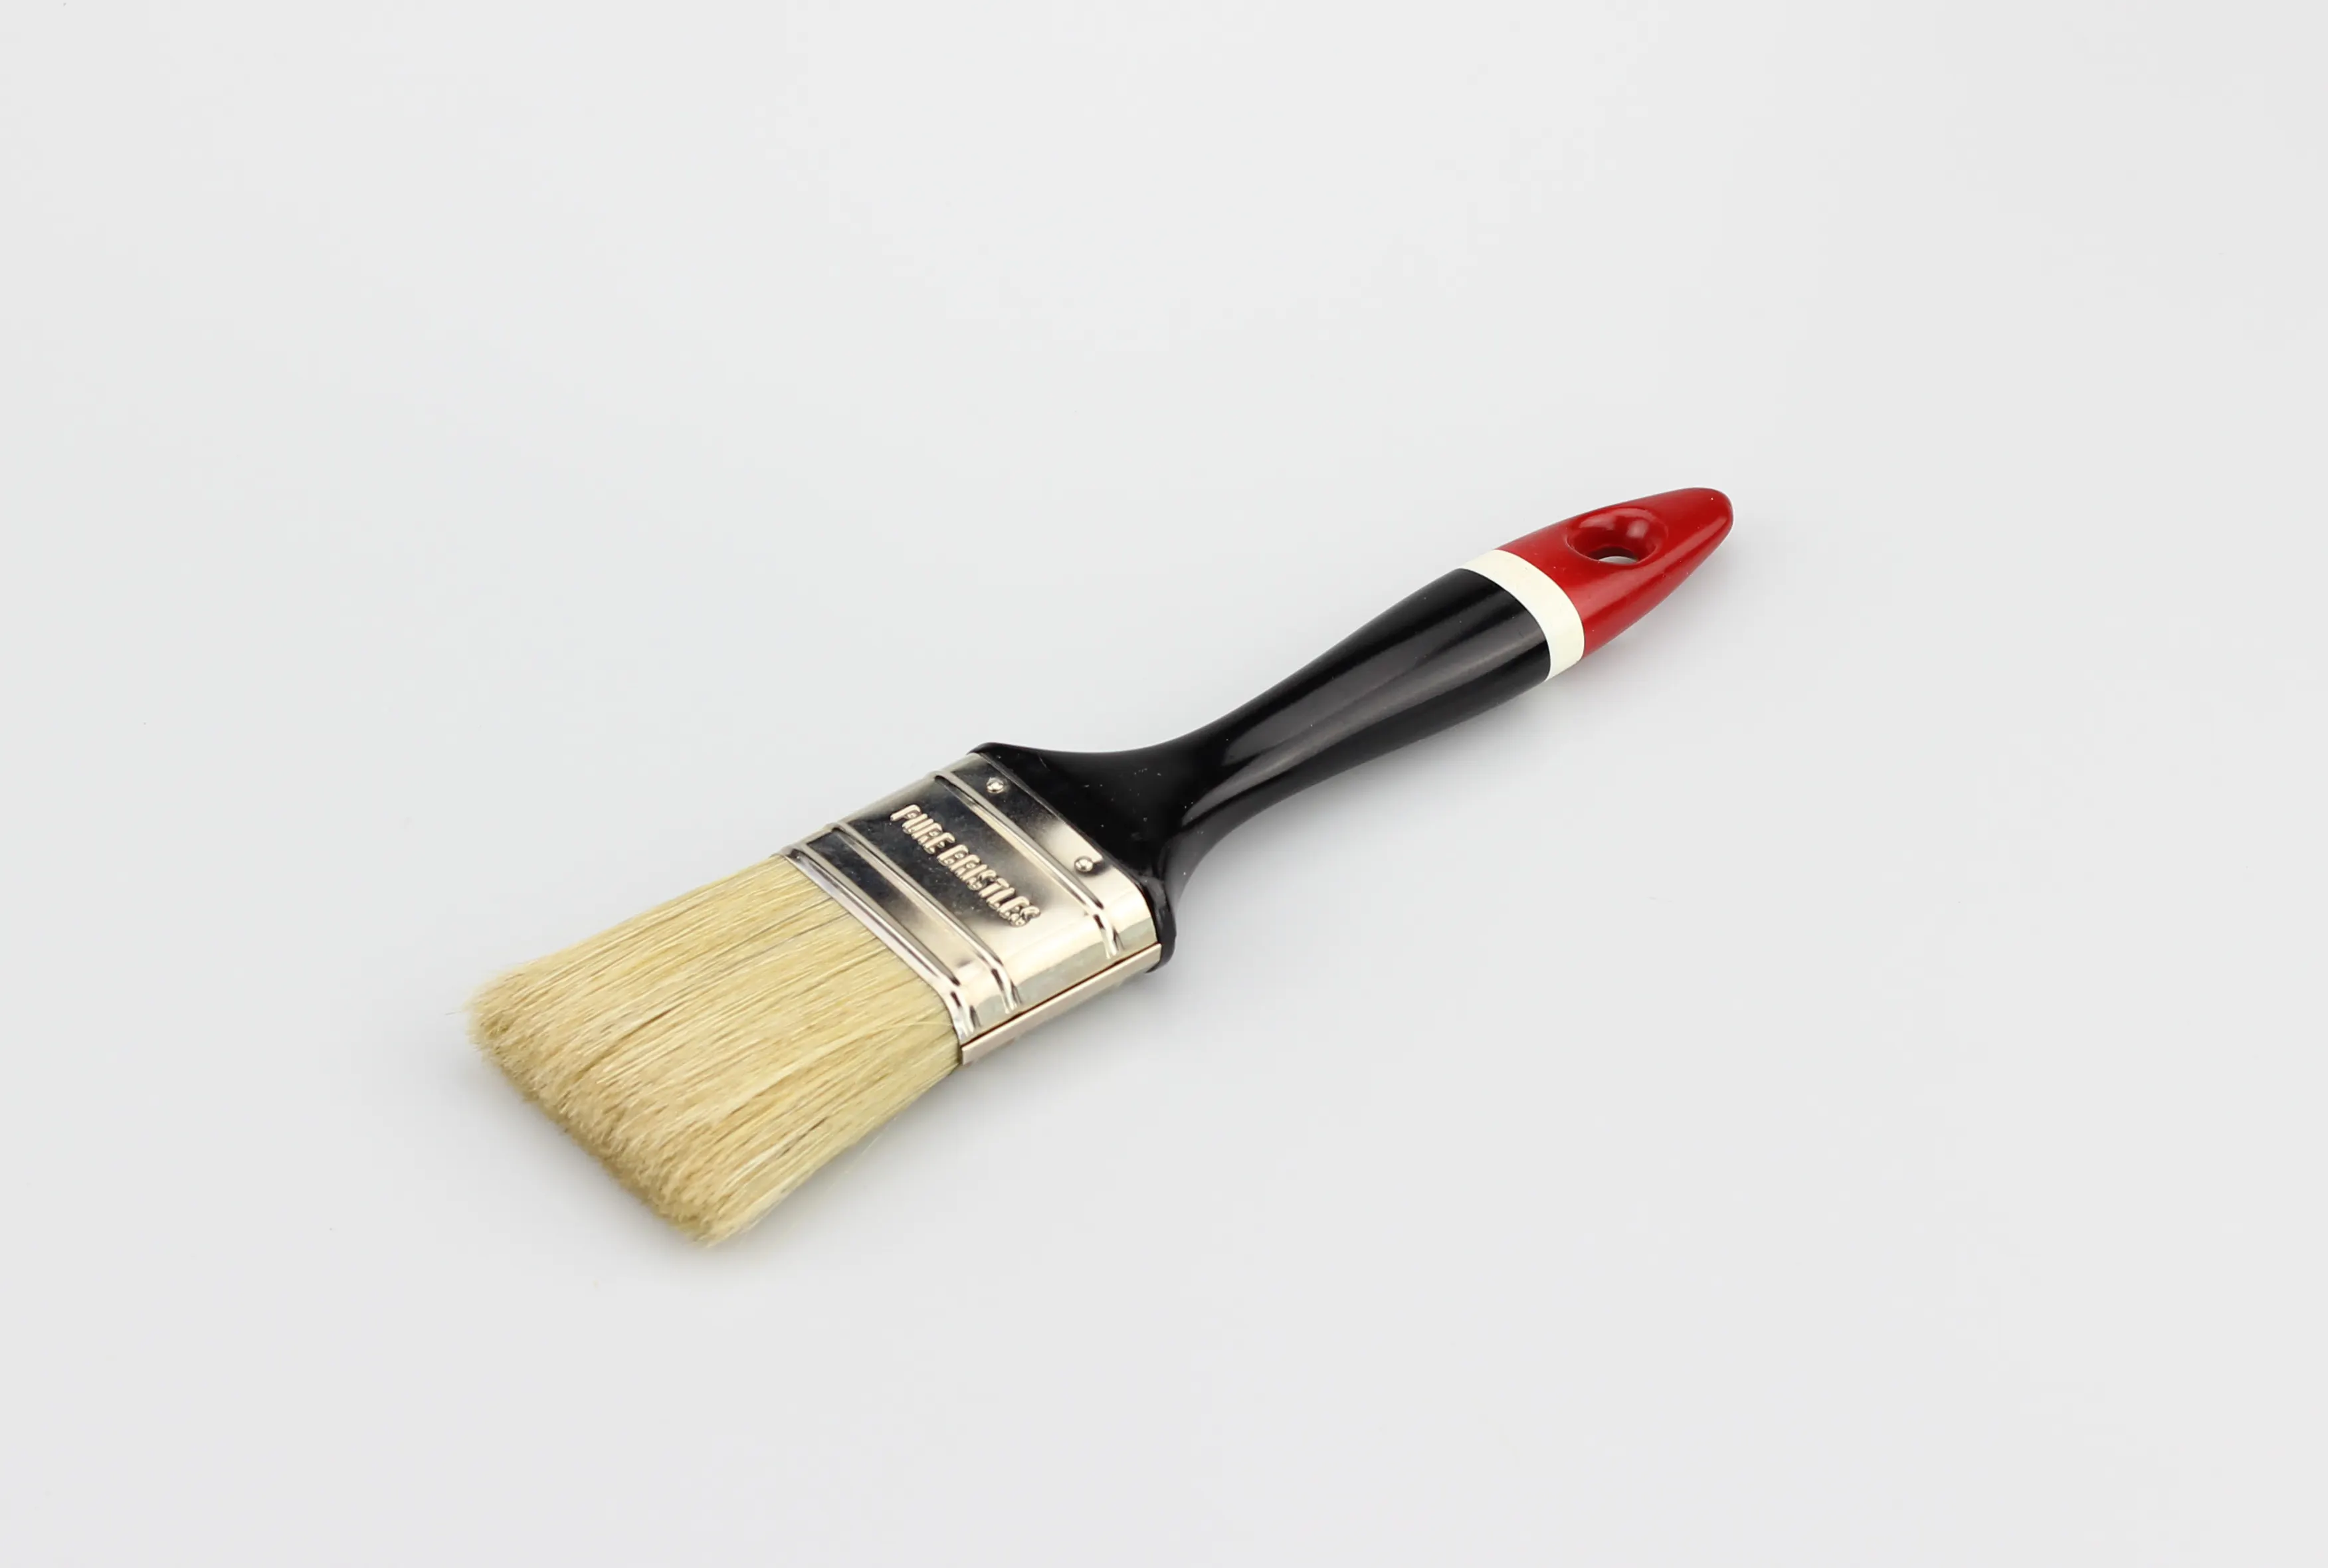 5 Pcs प्राकृतिक शुद्ध बाल खड़े पेंट ब्रश सेट चित्रकारी कम कीमतों के साथ ब्रश